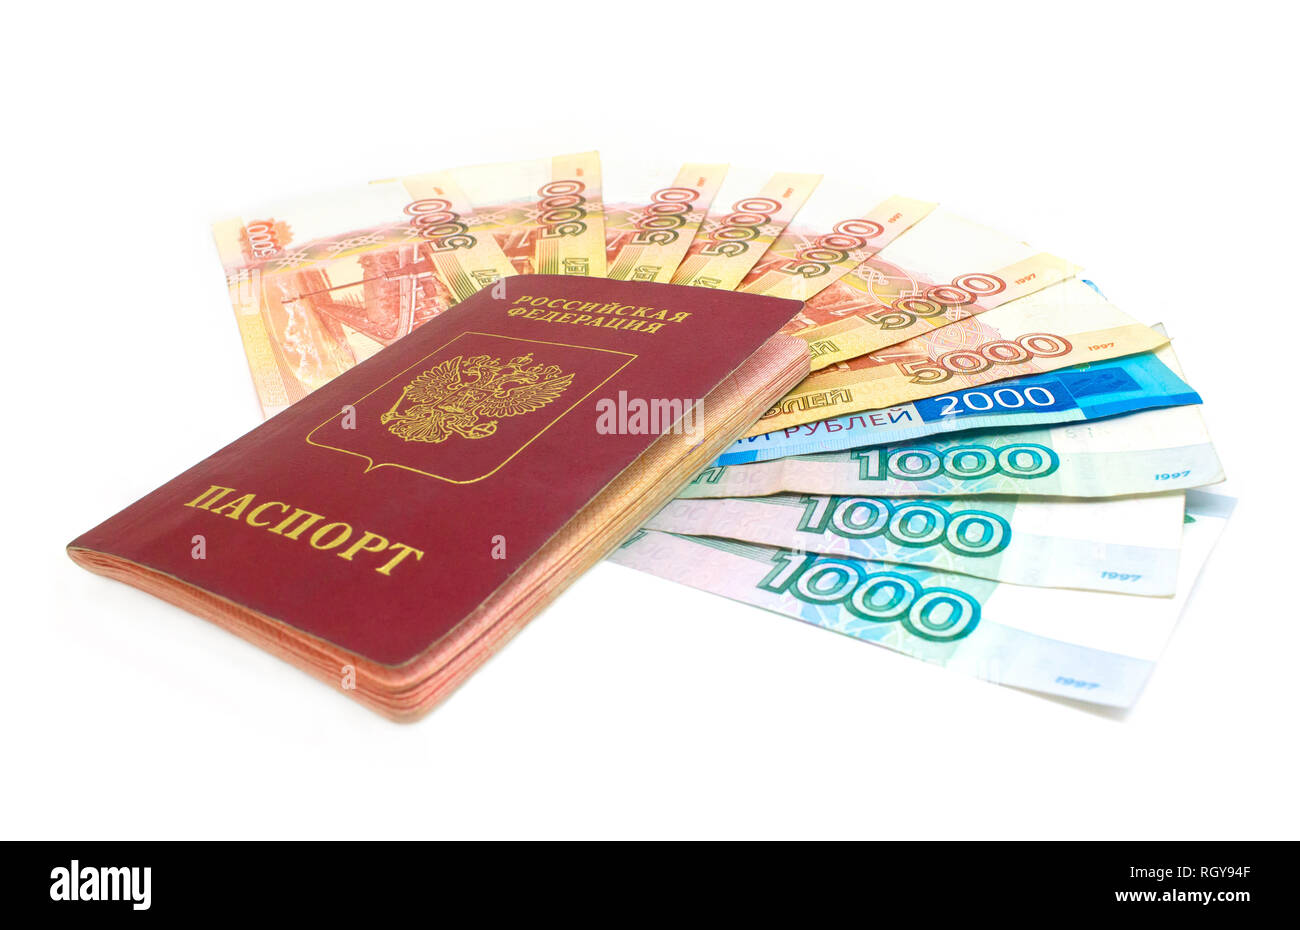 Russischer Reisepass mit Geld auf weißem Hintergrund. Russischer Rubel Banknote Bargeld. Stockfoto